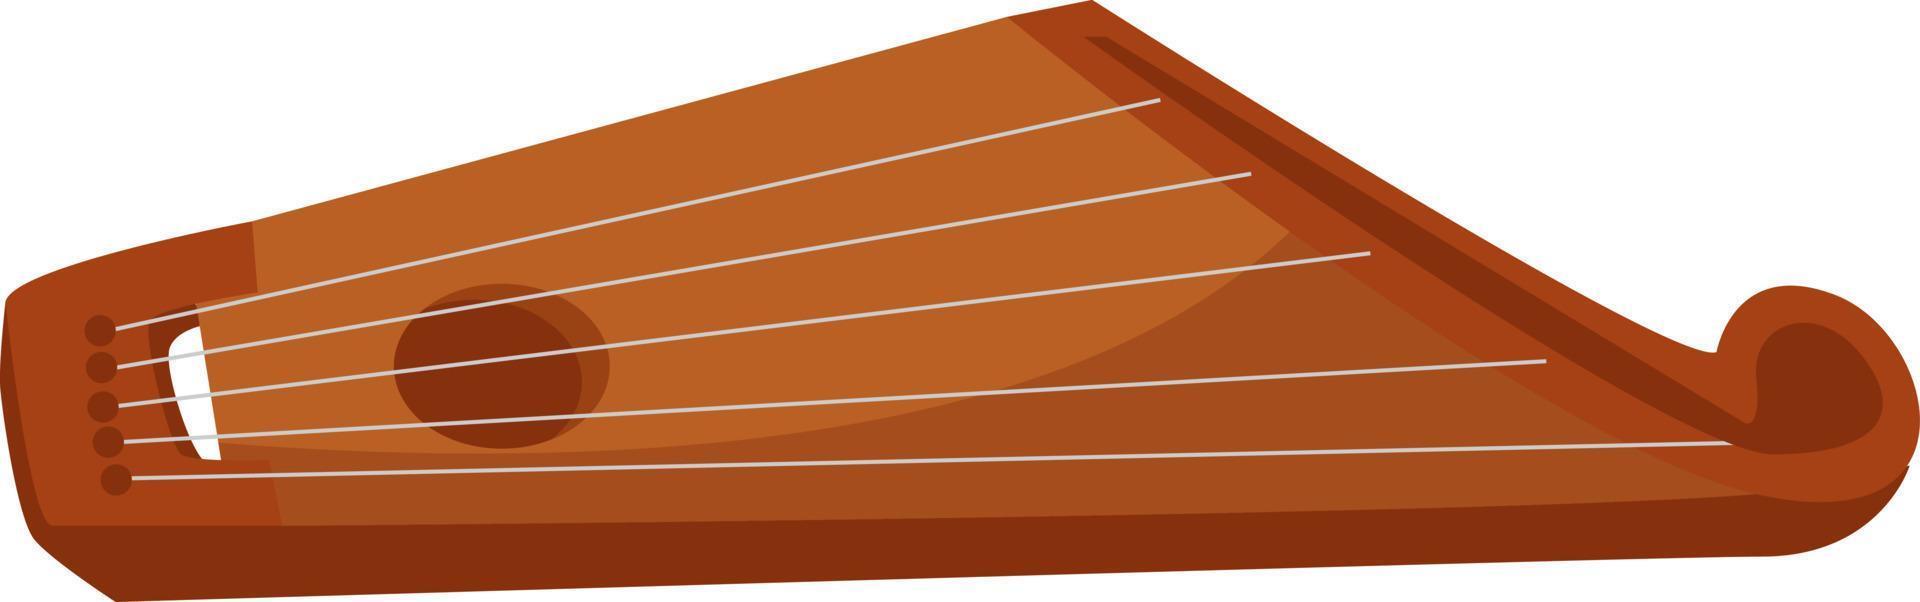 Kantele brun, illustration, vecteur sur fond blanc